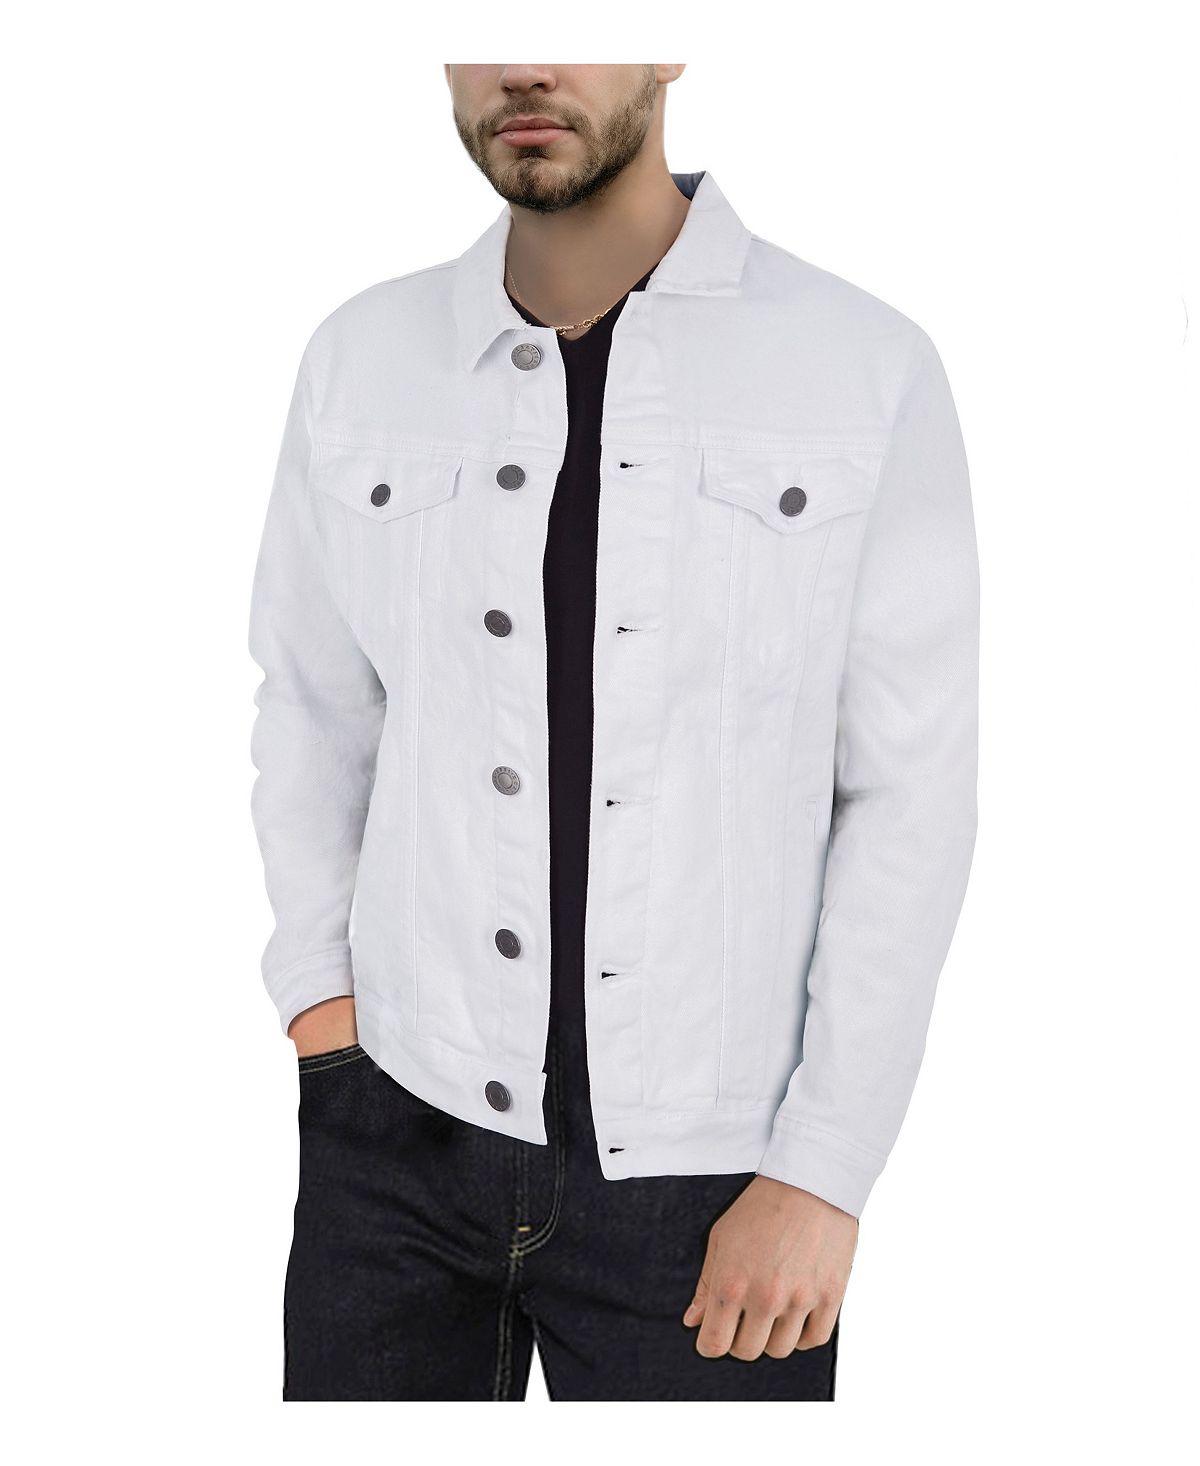 Мужская приталенная джинсовая куртка с эффектом потертости X-Ray, белый мужская джинсовая куртка винтажная повседневная однотонная куртка цвета хаки с карманами